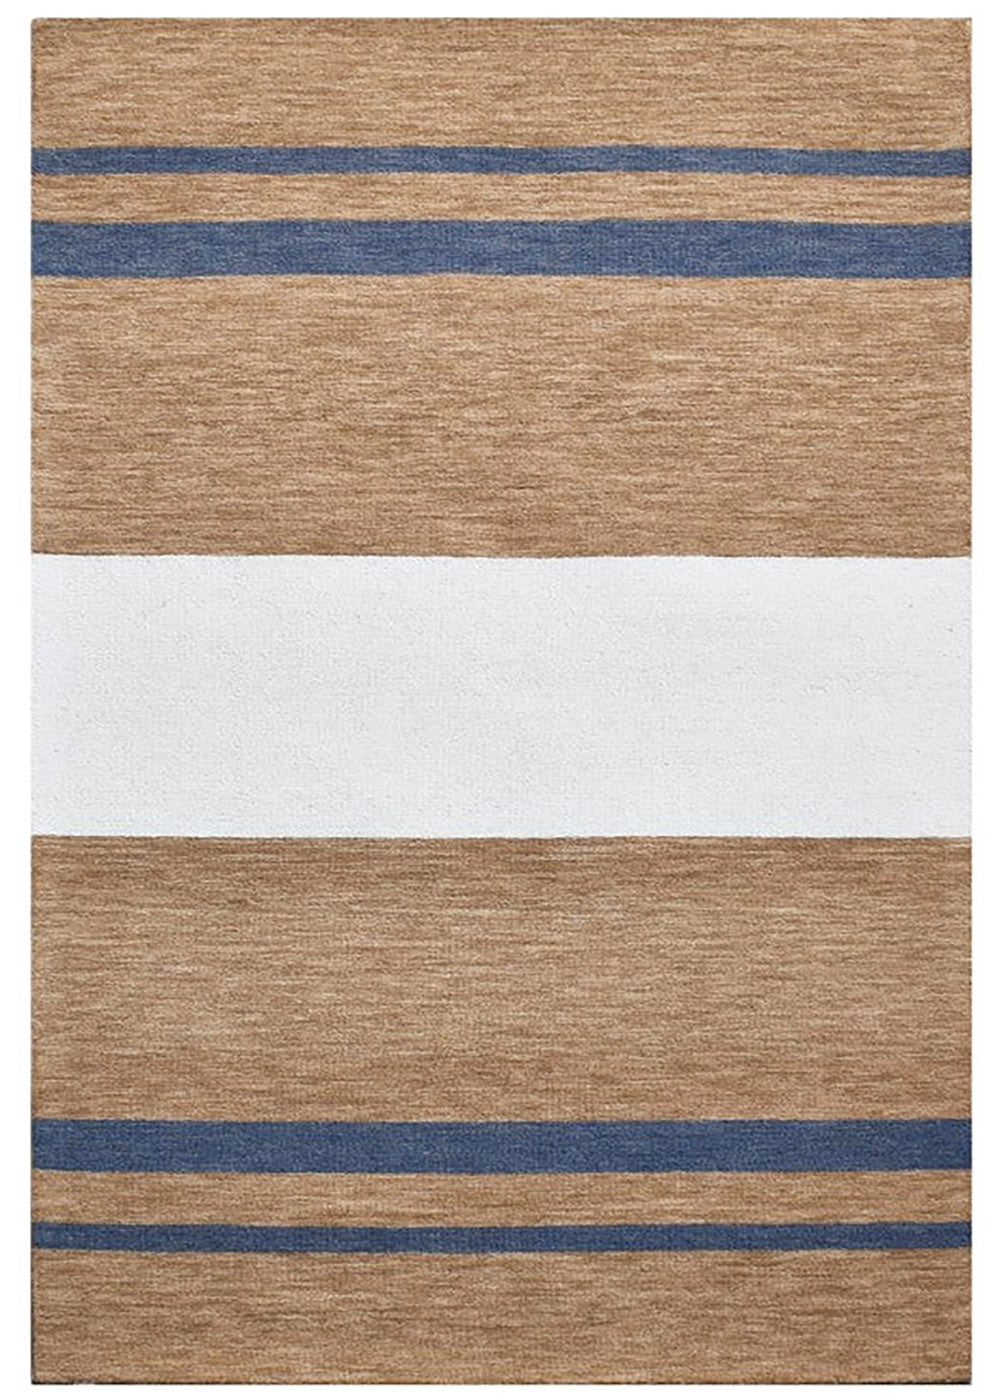 Riviera Tan Stripes Rug | Wool Rugs Belrose | Rugs N Timber